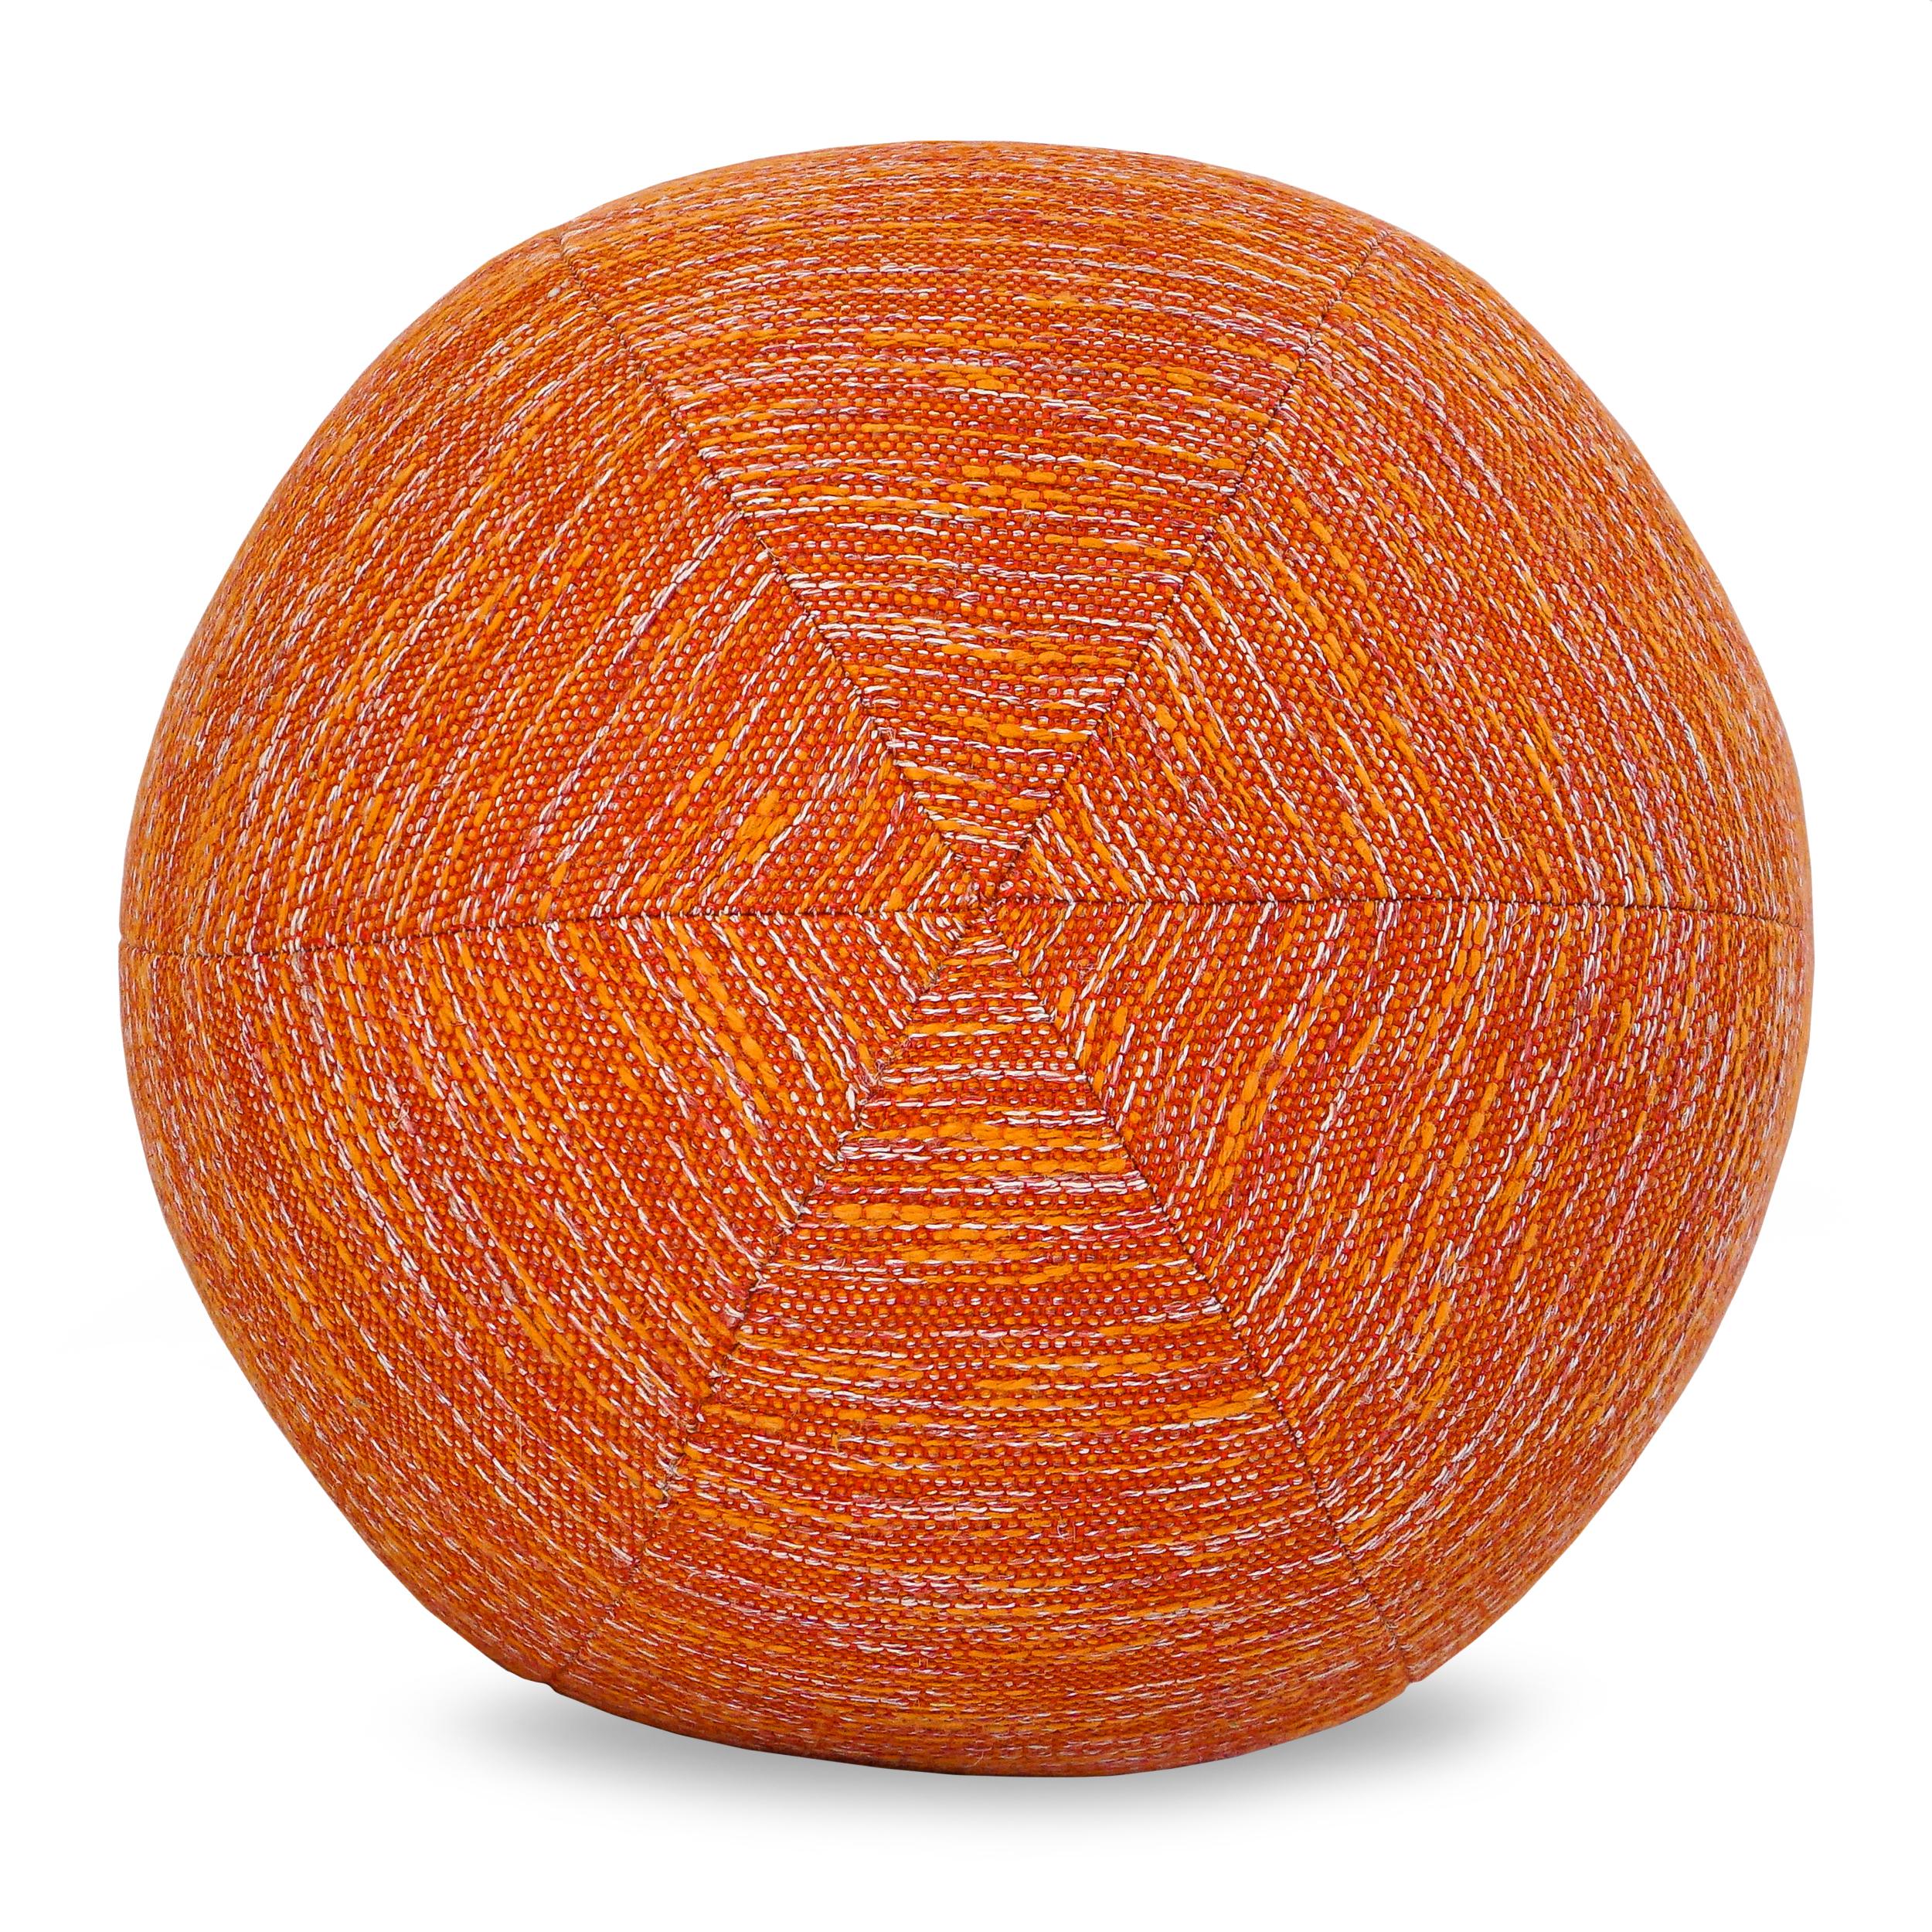 Un tissu orange texturé et brodé recouvre ce coussin boule. Le ballon peut être fabriqué dans n'importe quel tissu. Demandez la disponibilité actuelle de l'oreiller tel que montré. 

Dimensions générales : 12 